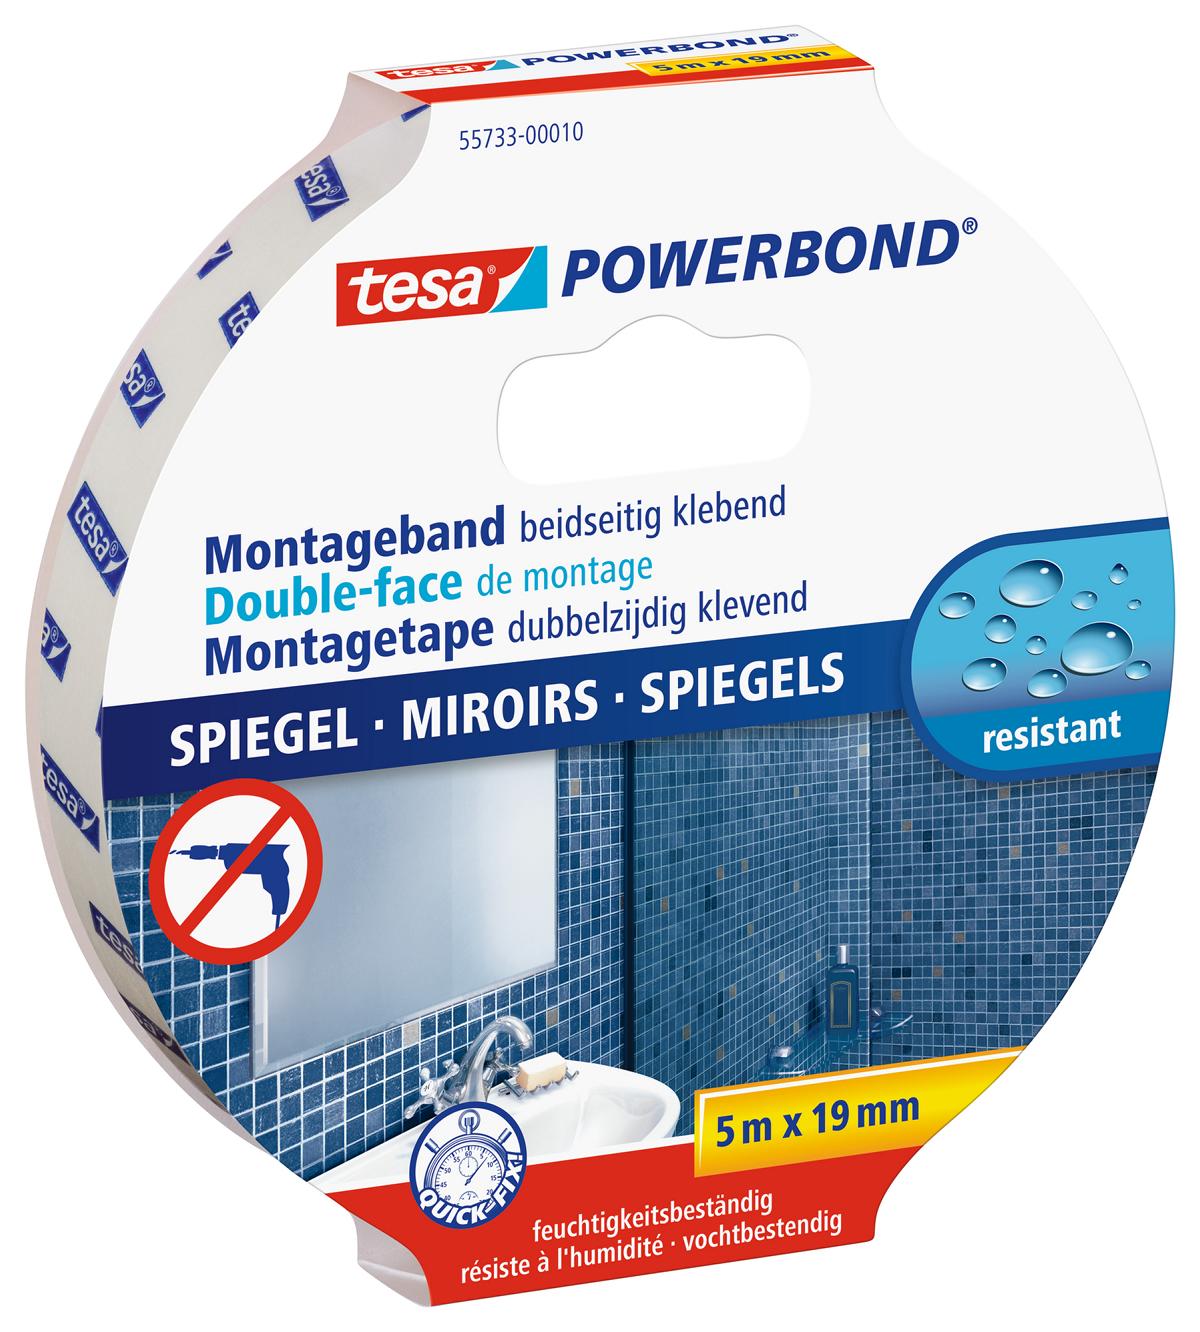 tesa Powerbond Montageband Spiegel, 5 m